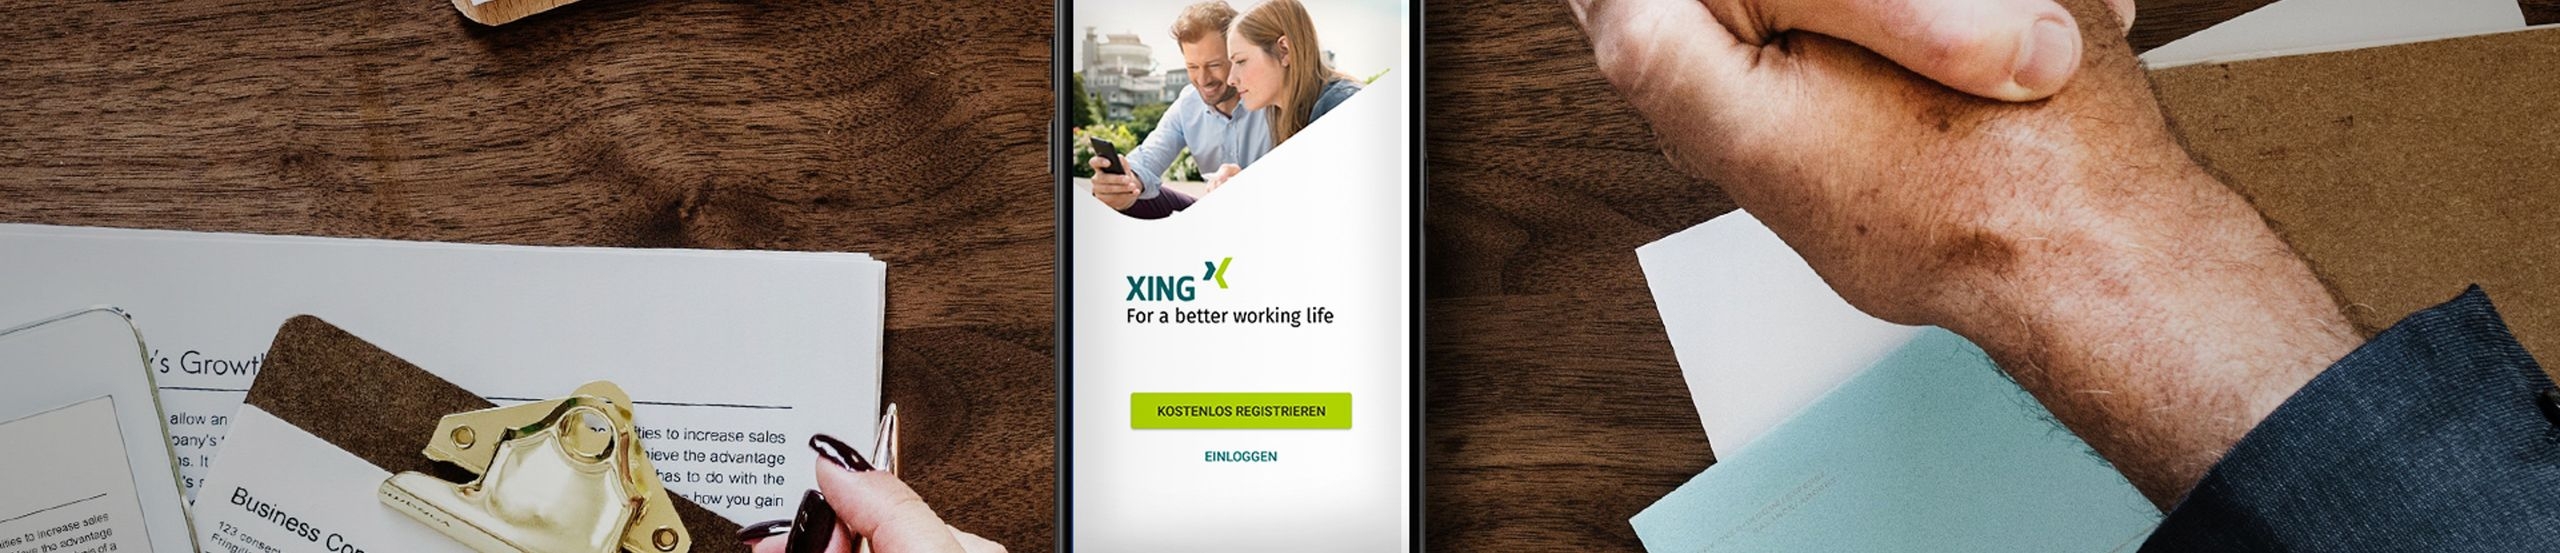 Die Hände von zwei Personen, die sich die Hand geben über einem Tisch mit Klemmbrettern, Dokumenten, einer Hand mit Stift und einem Smartphone mit dem Startbildschirm der Xing-App auf dem Display